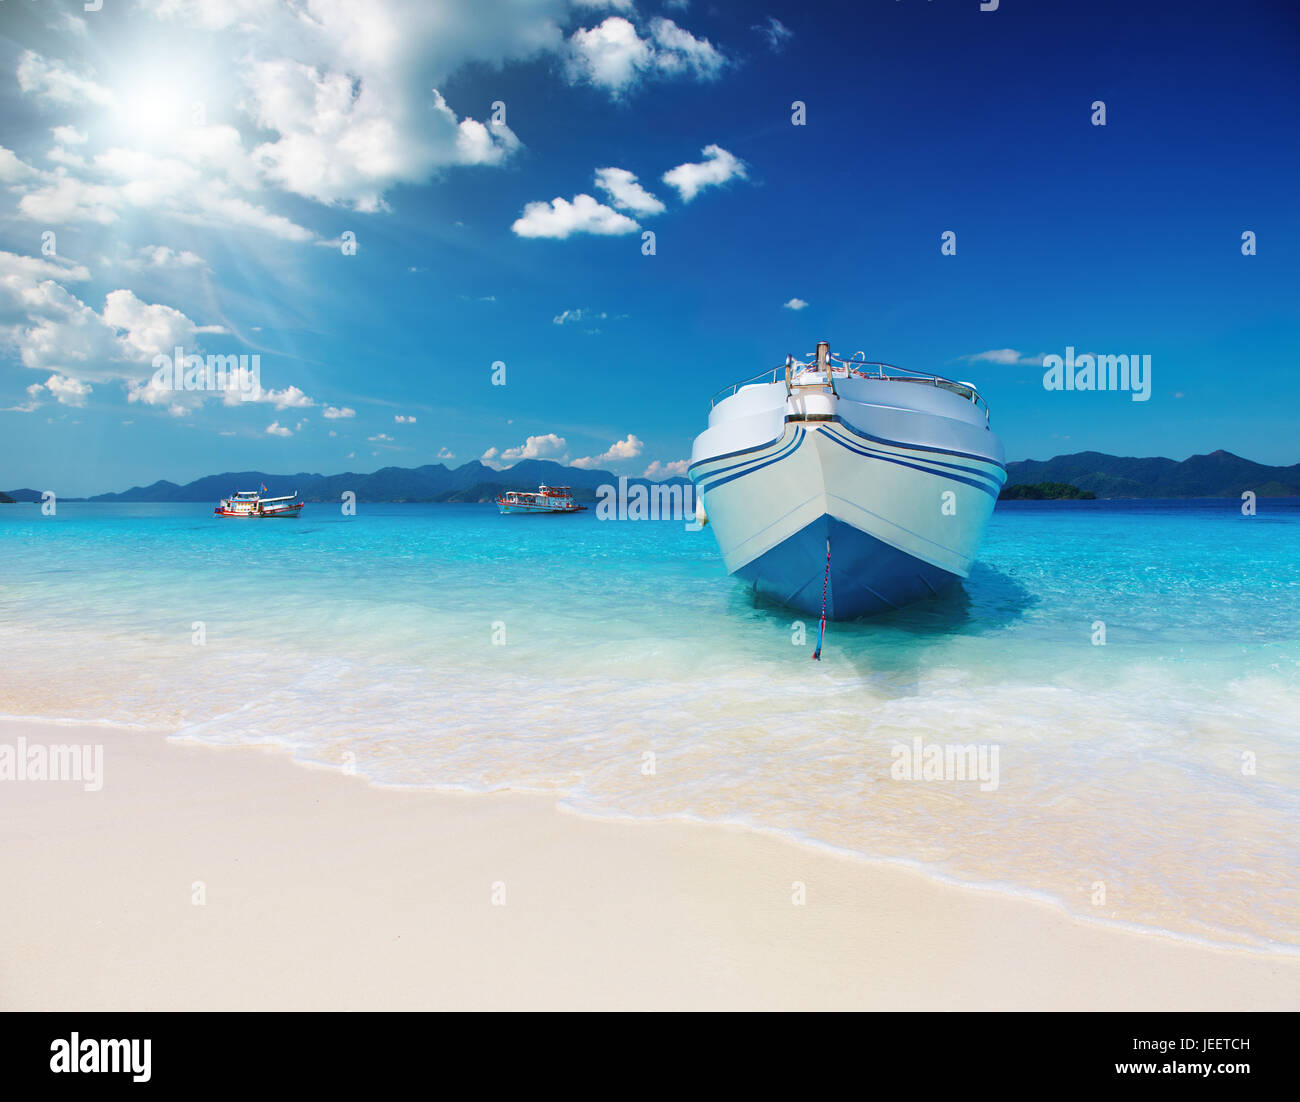 Playa Tropical con arena blanca y mar azul Foto de stock